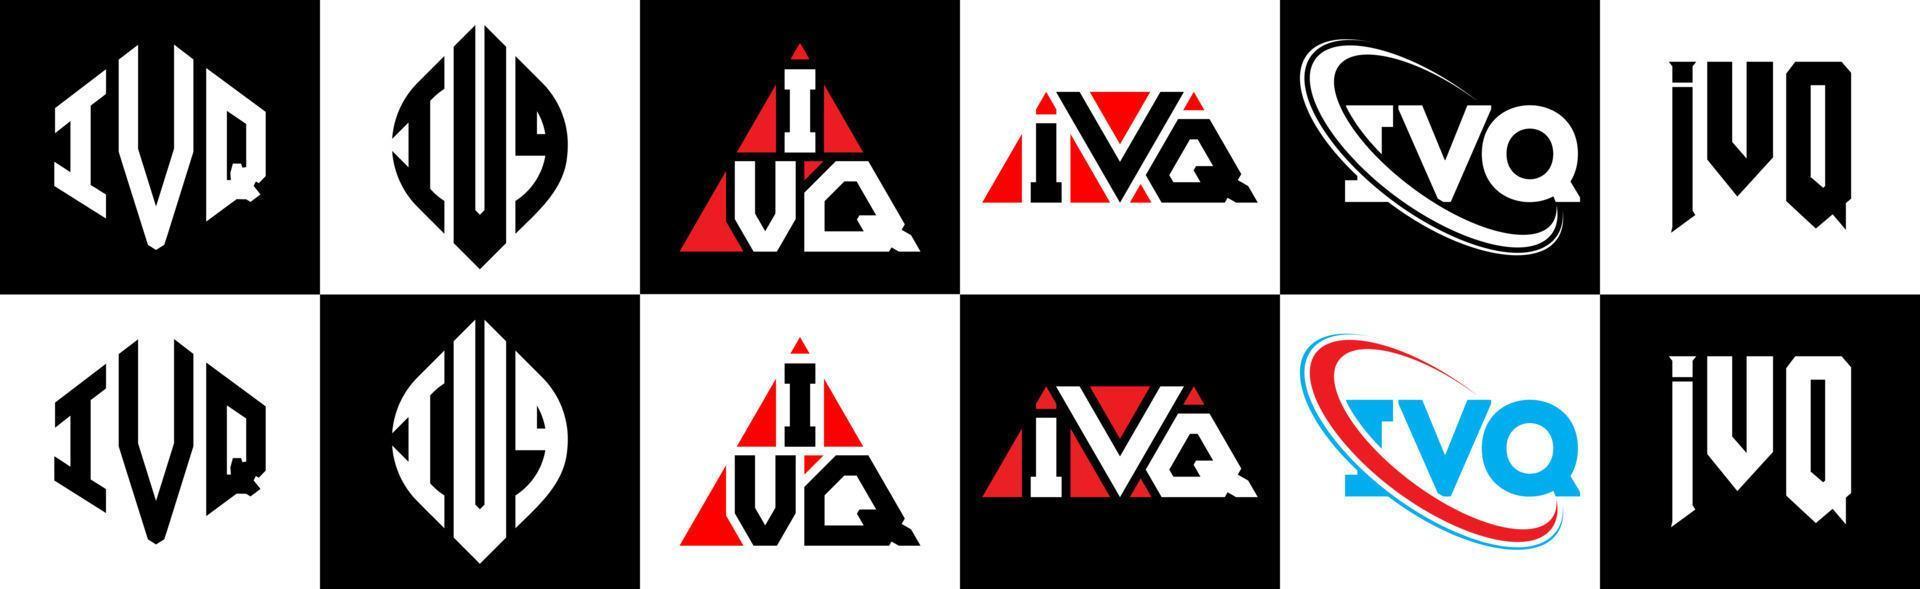 création de logo de lettre ivq en six styles. polygone ivq, cercle, triangle, hexagone, style plat et simple avec logo de lettre de variation de couleur noir et blanc dans un plan de travail. logo minimaliste et classique ivq vecteur